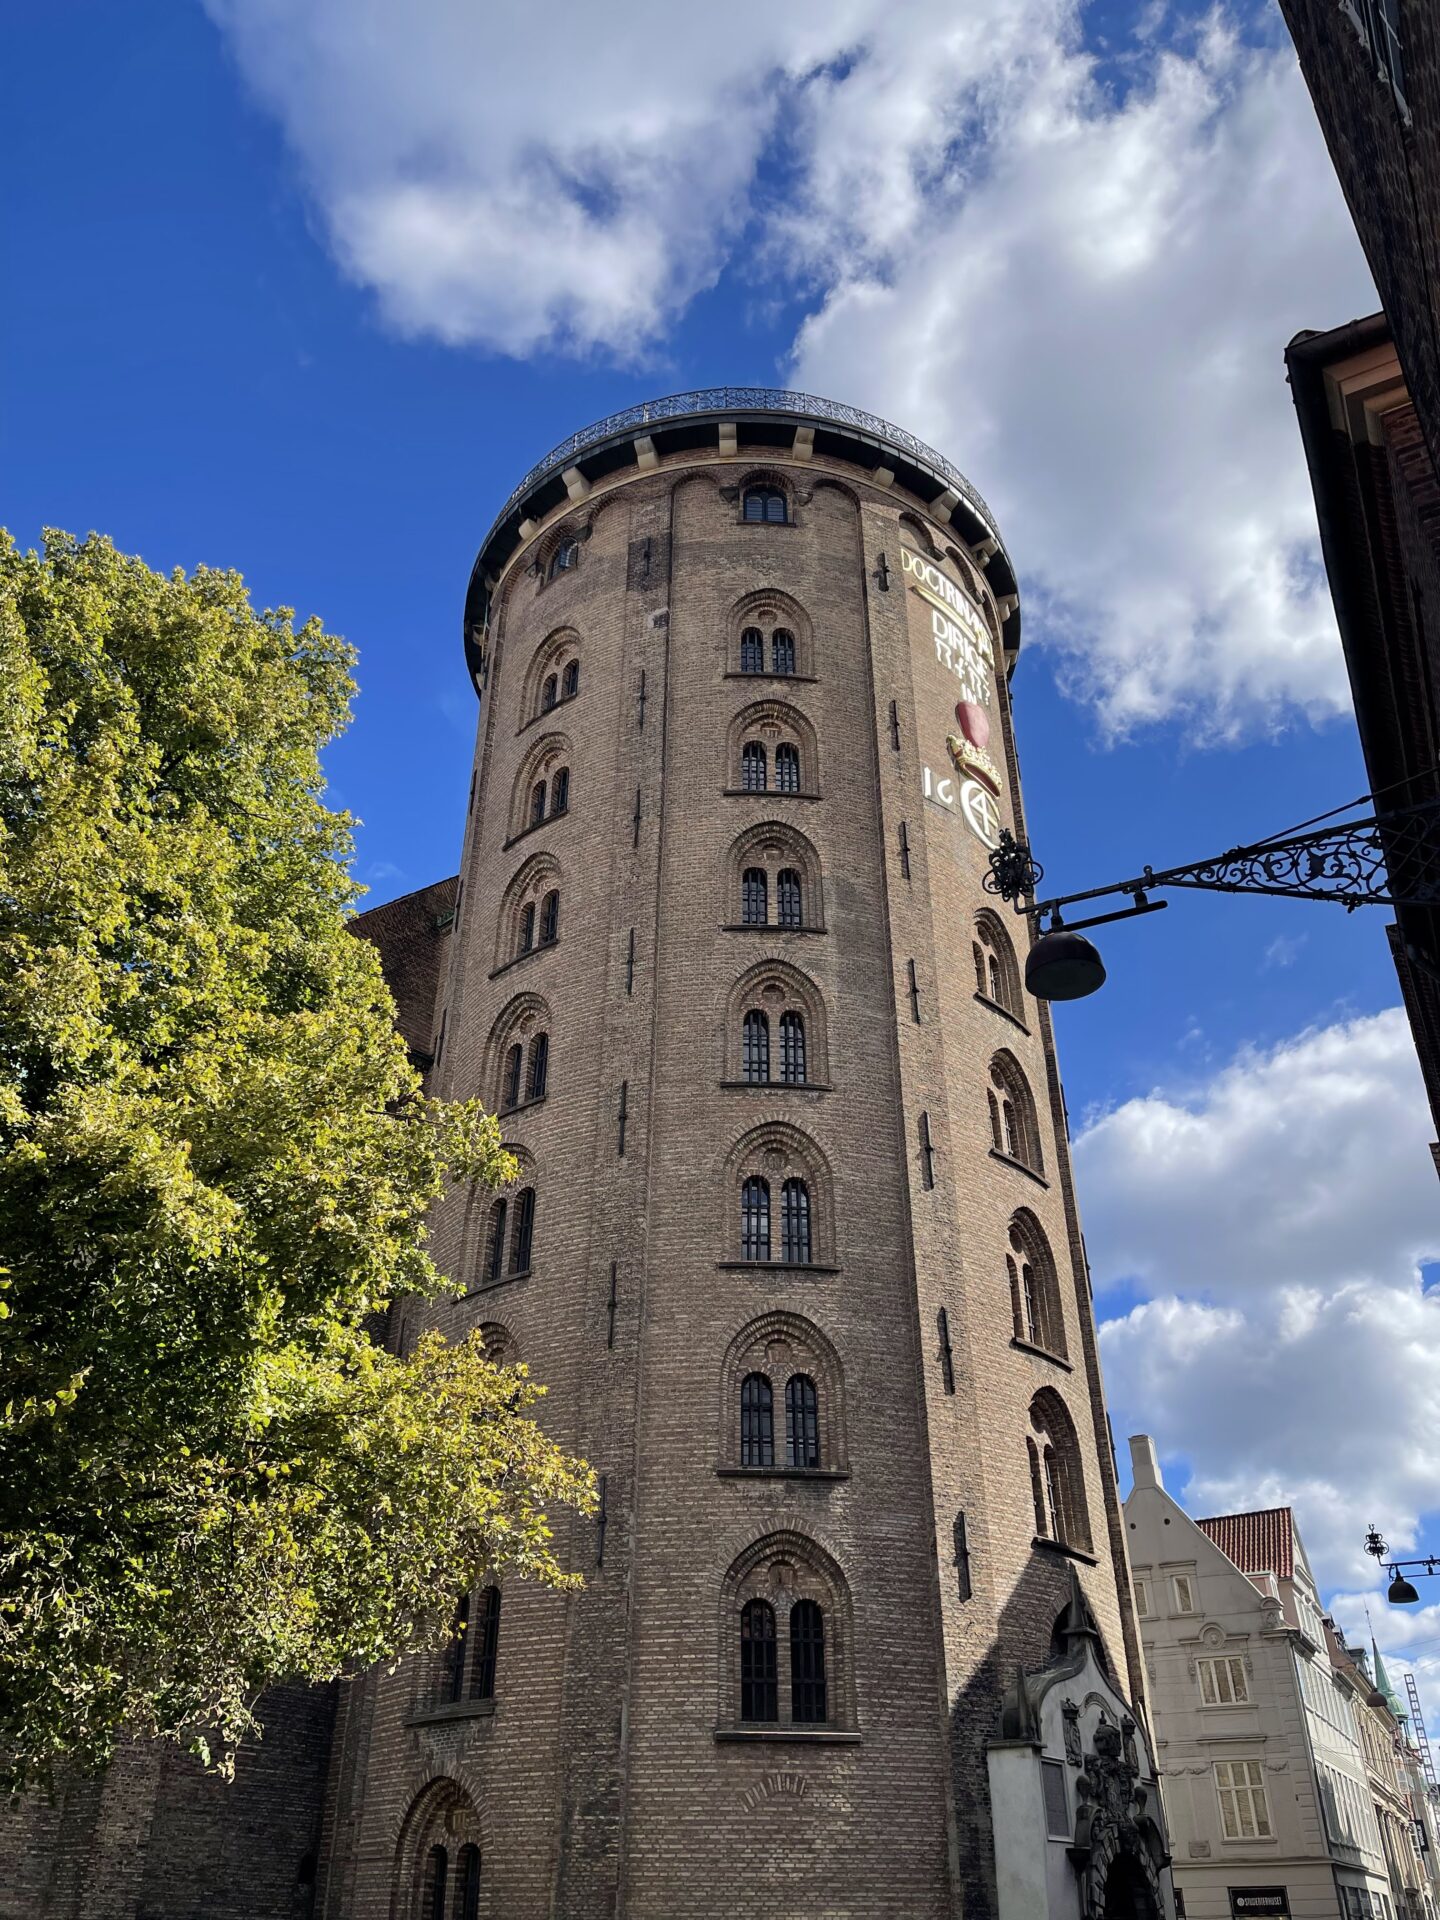 Rundetaarn (Round Tower) in Copenhagen